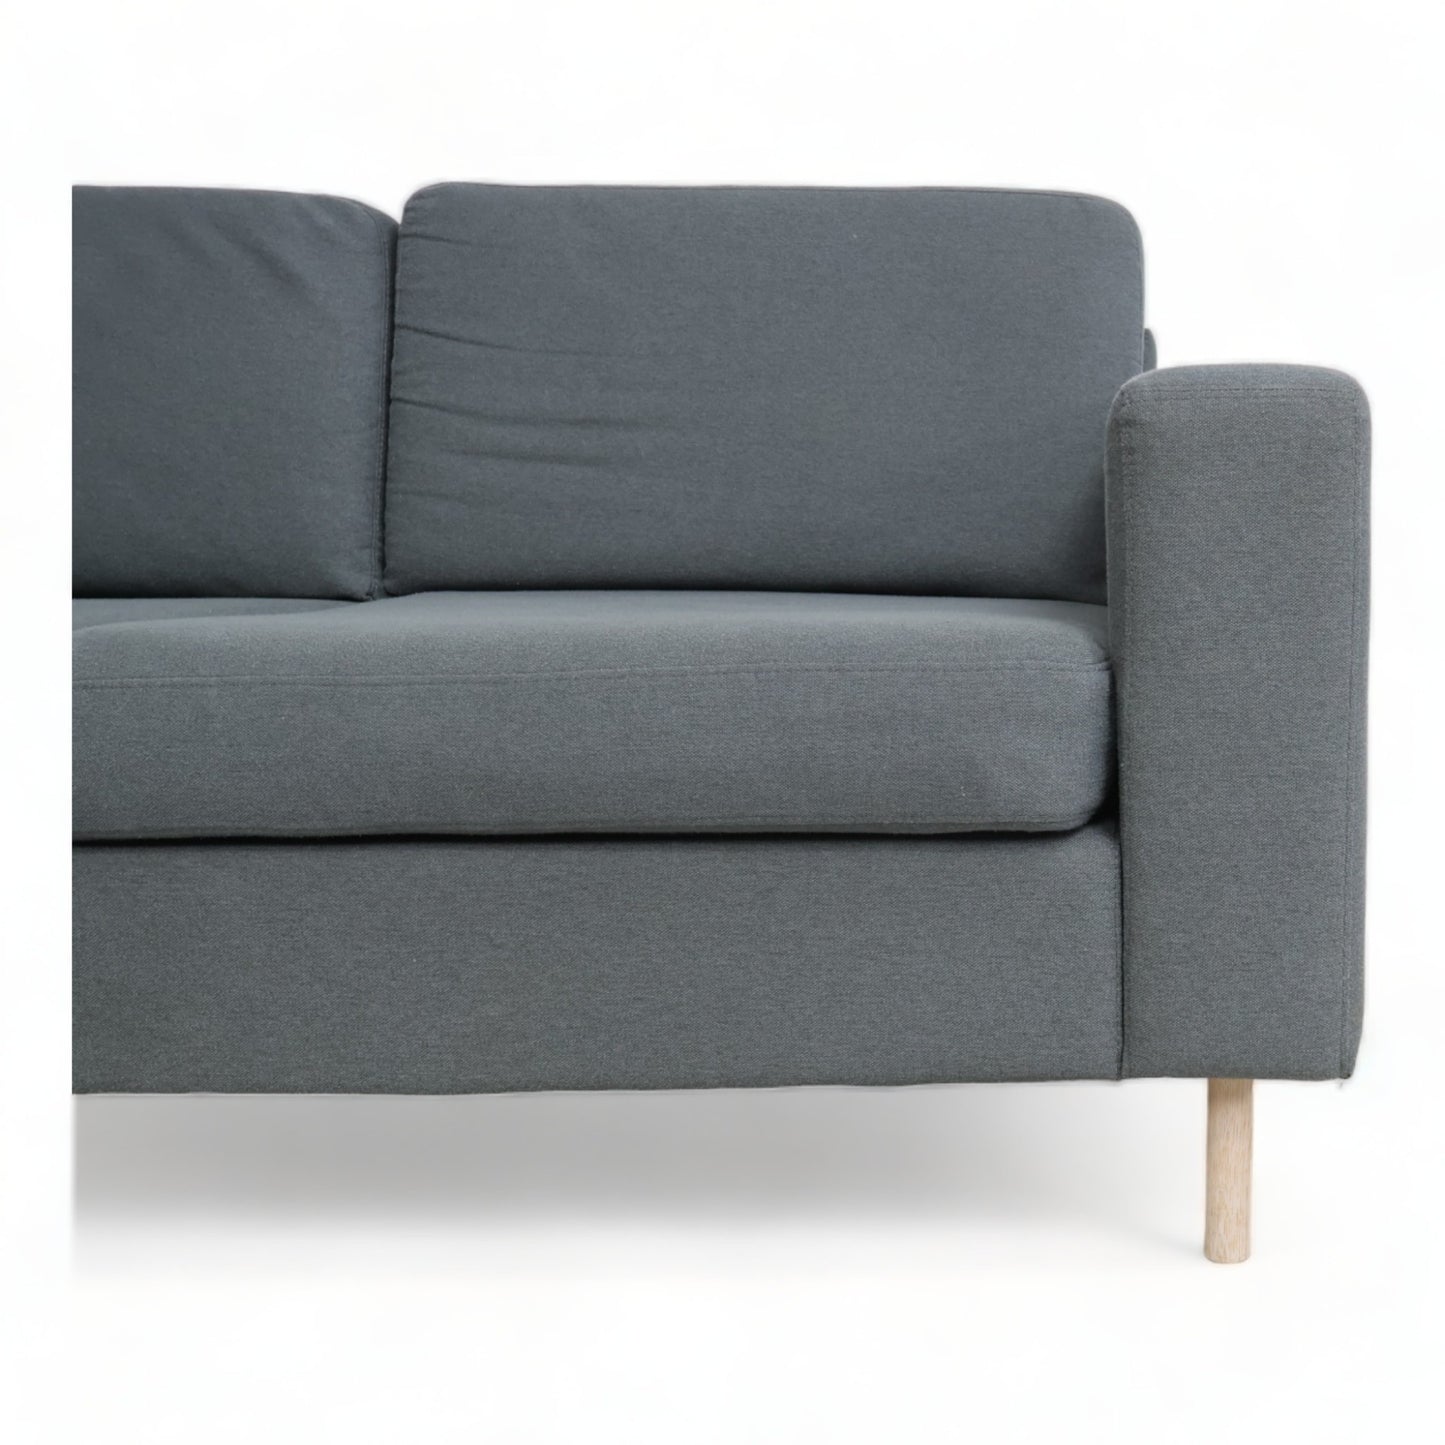 Nyrenset | Bolia Scandinavia 3,5-seter sofa med sjeselong